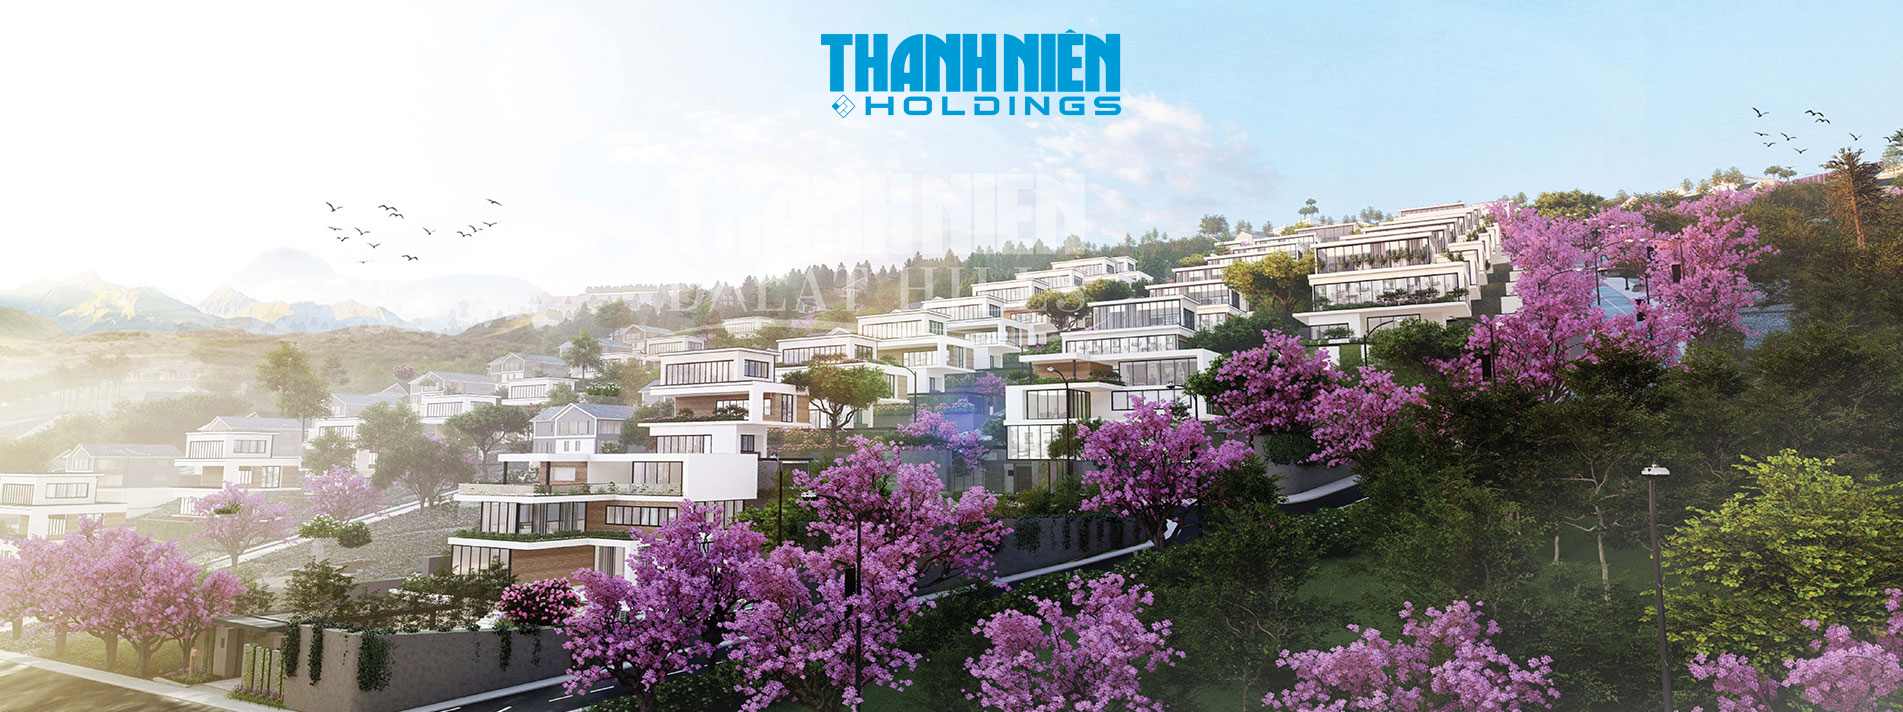 Thanh Niên Holdings